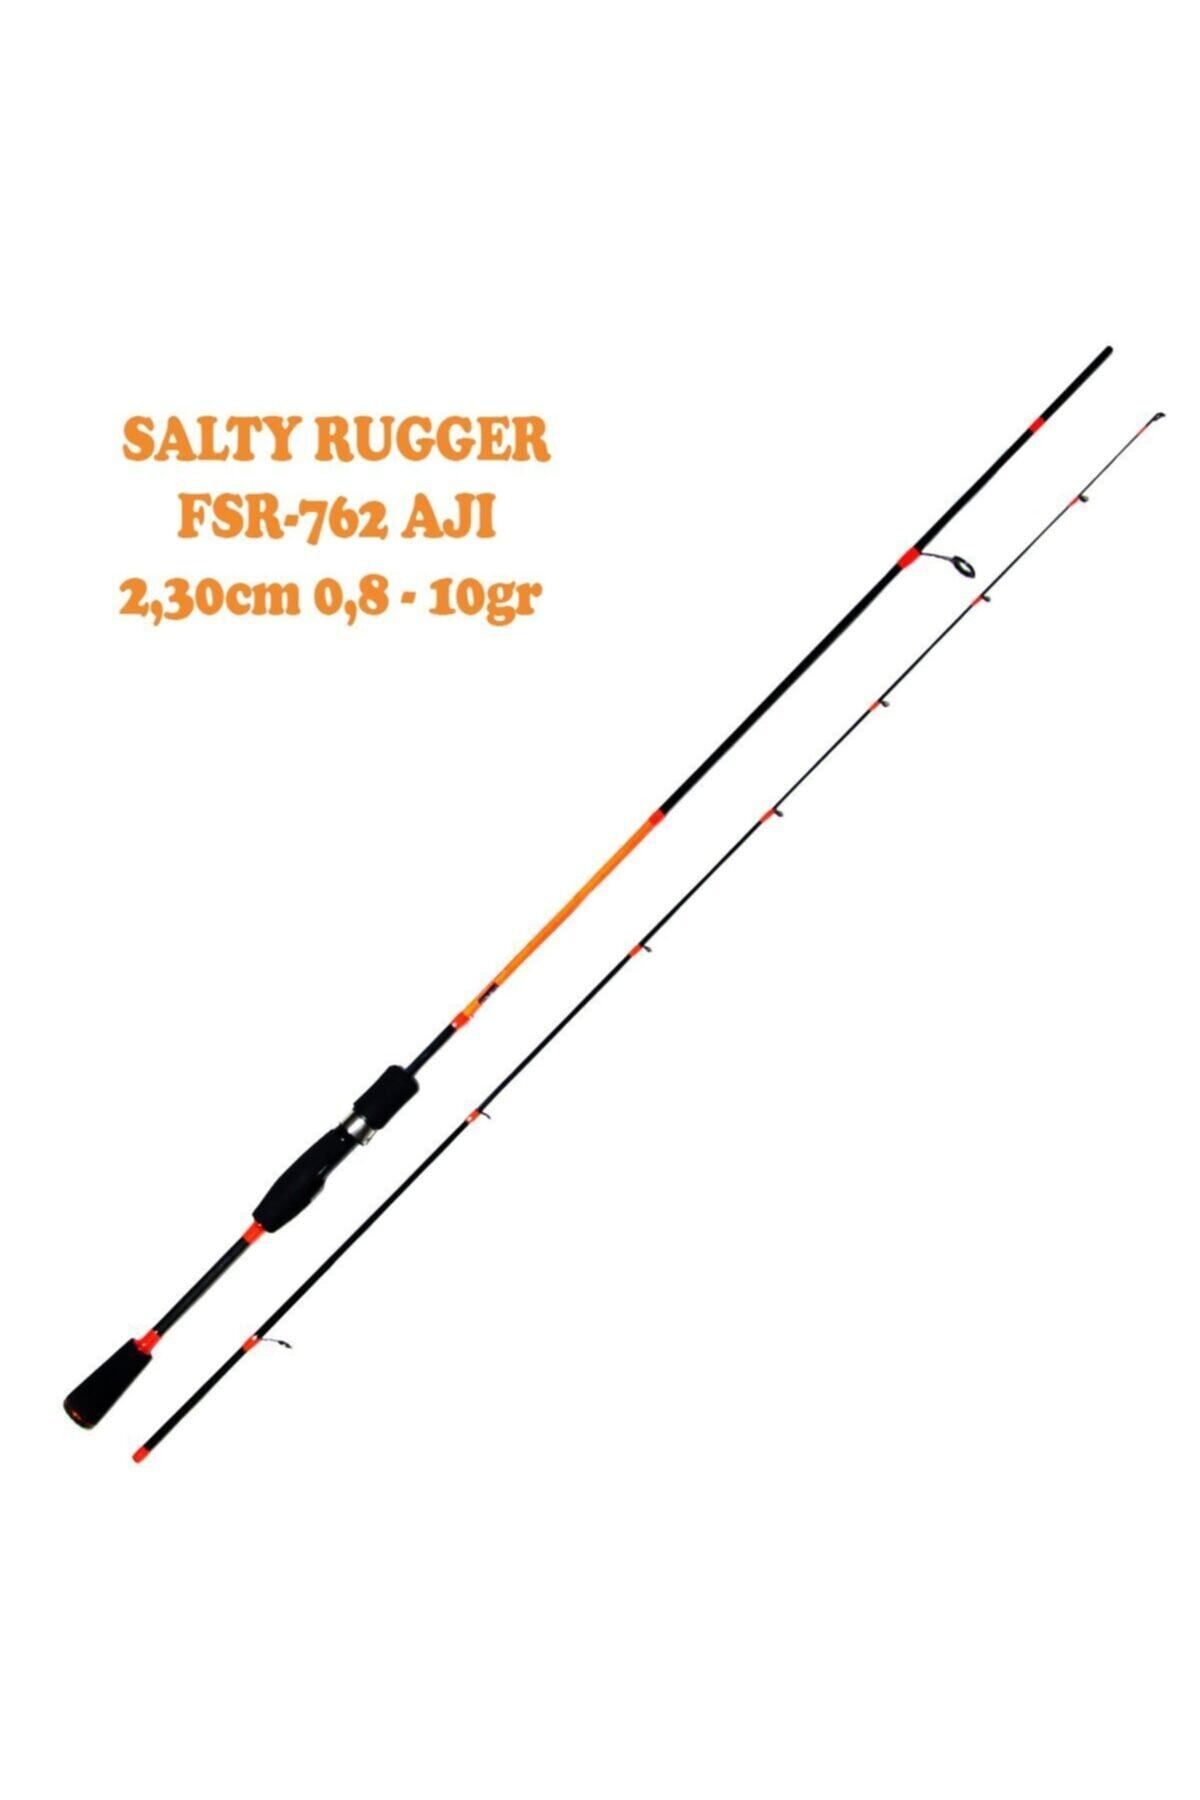 Fujin Salty Rugger 230 Cm 0.8-10 Gr Fsr-762/aji